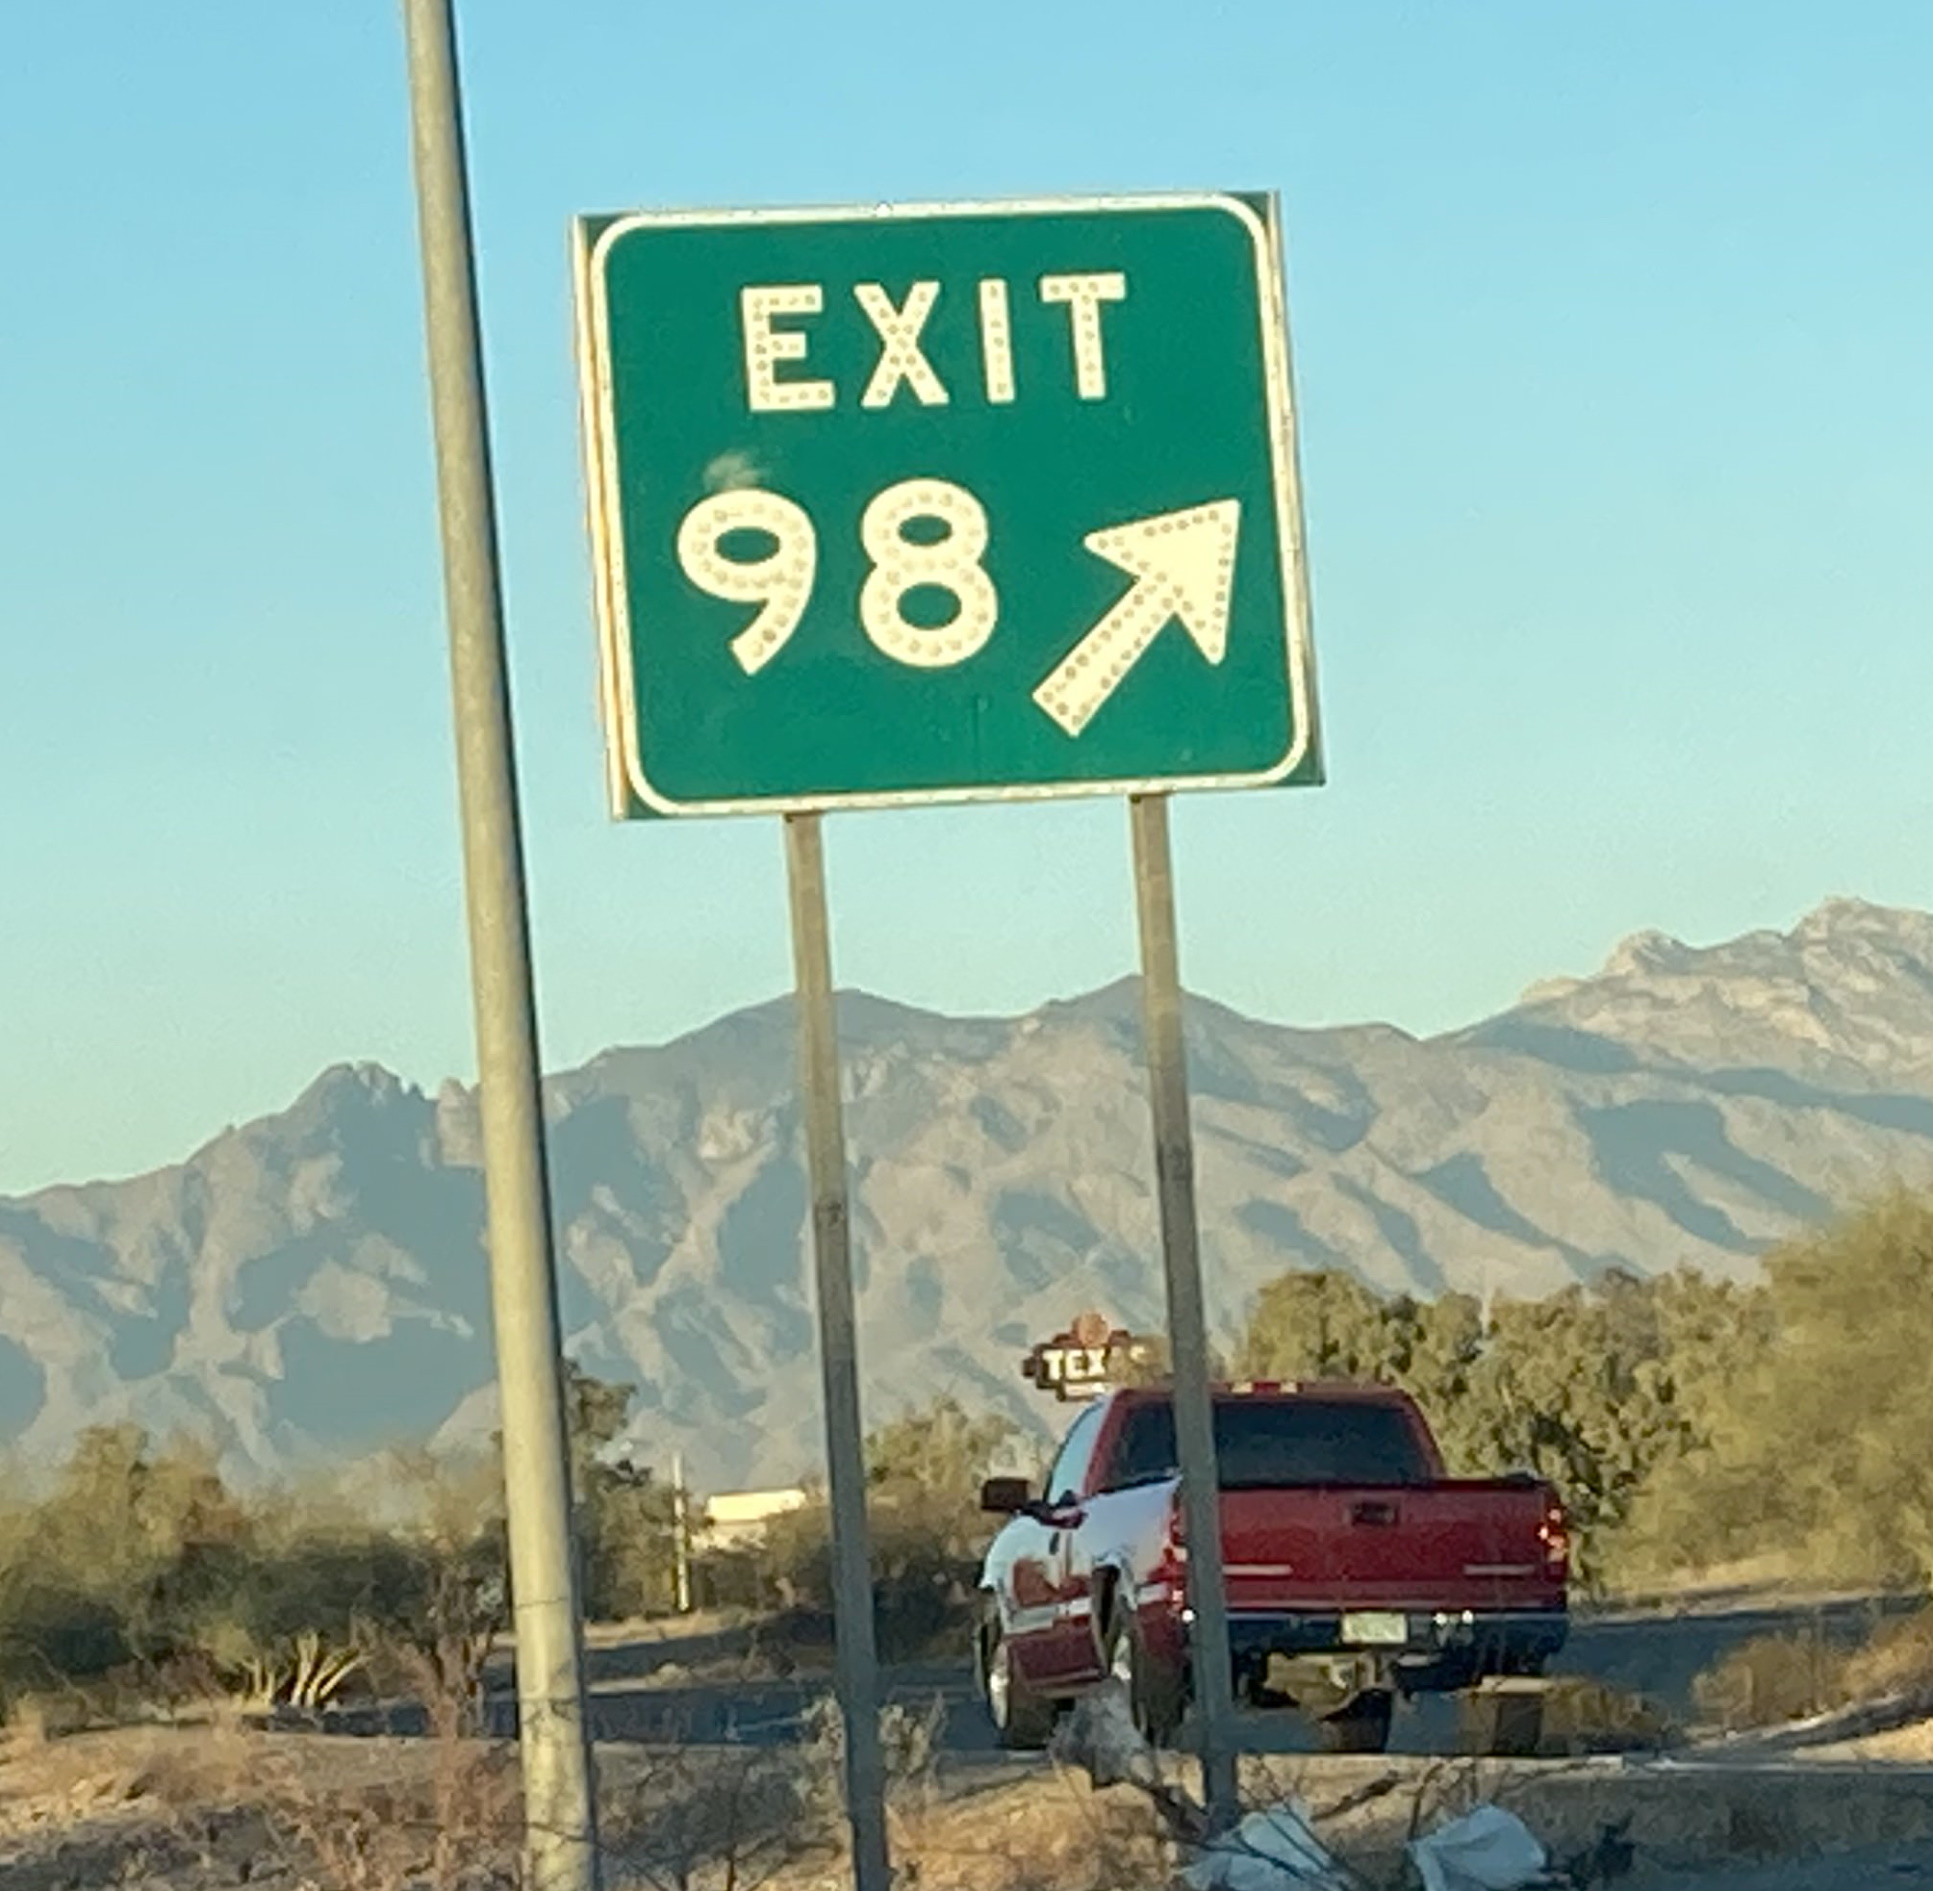 I19N/Exit 98